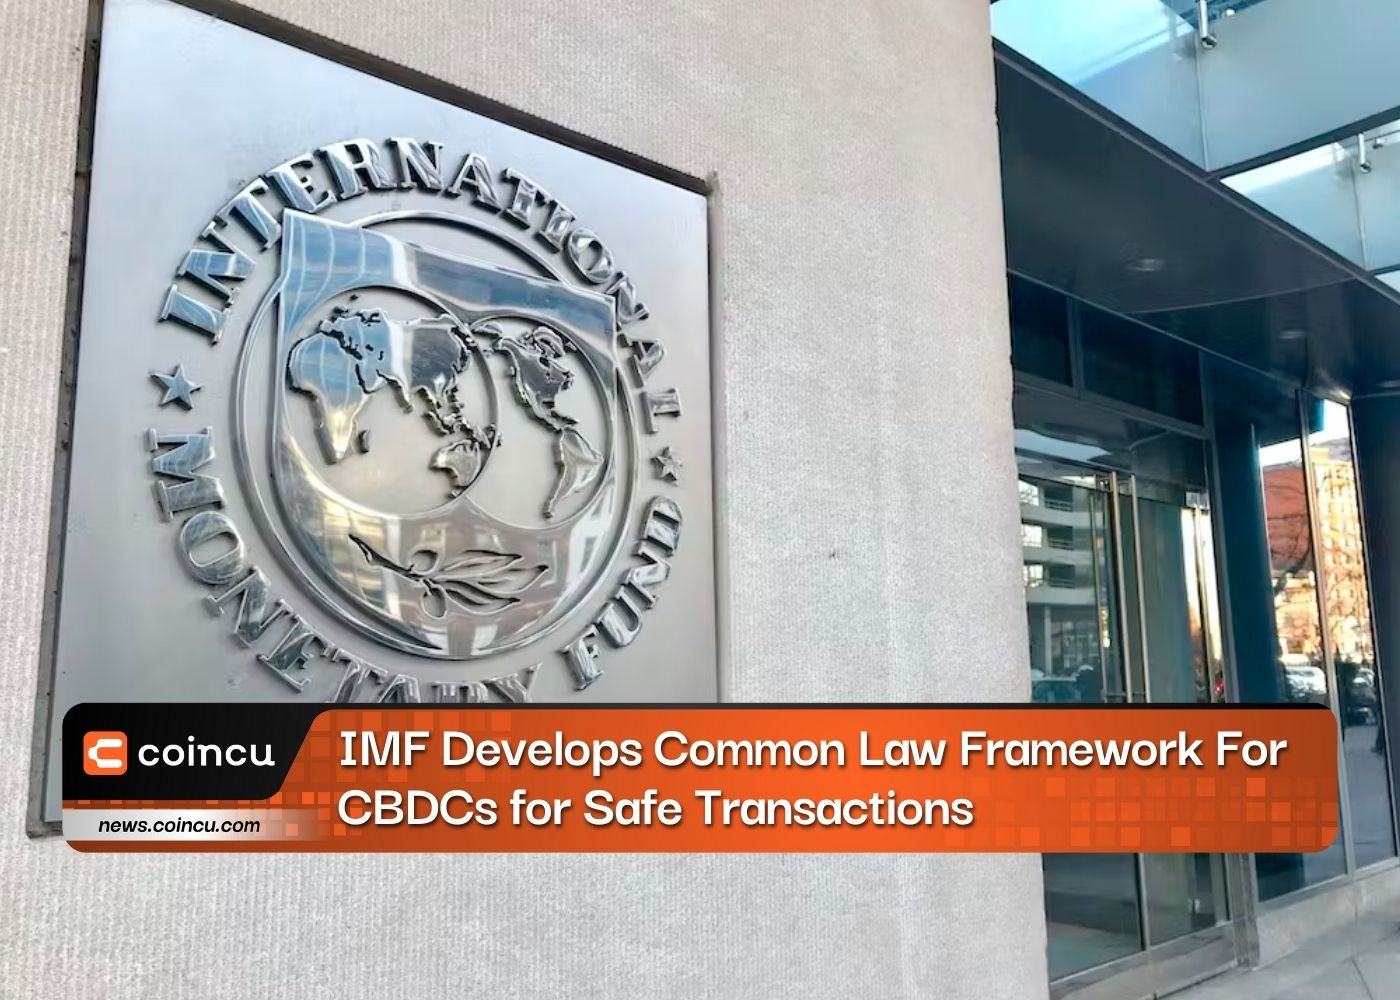 IMF, Güvenli İşlemlere Yönelik CBDC'lere Yönelik Ortak Hukuk Çerçevesi Geliştiriyor